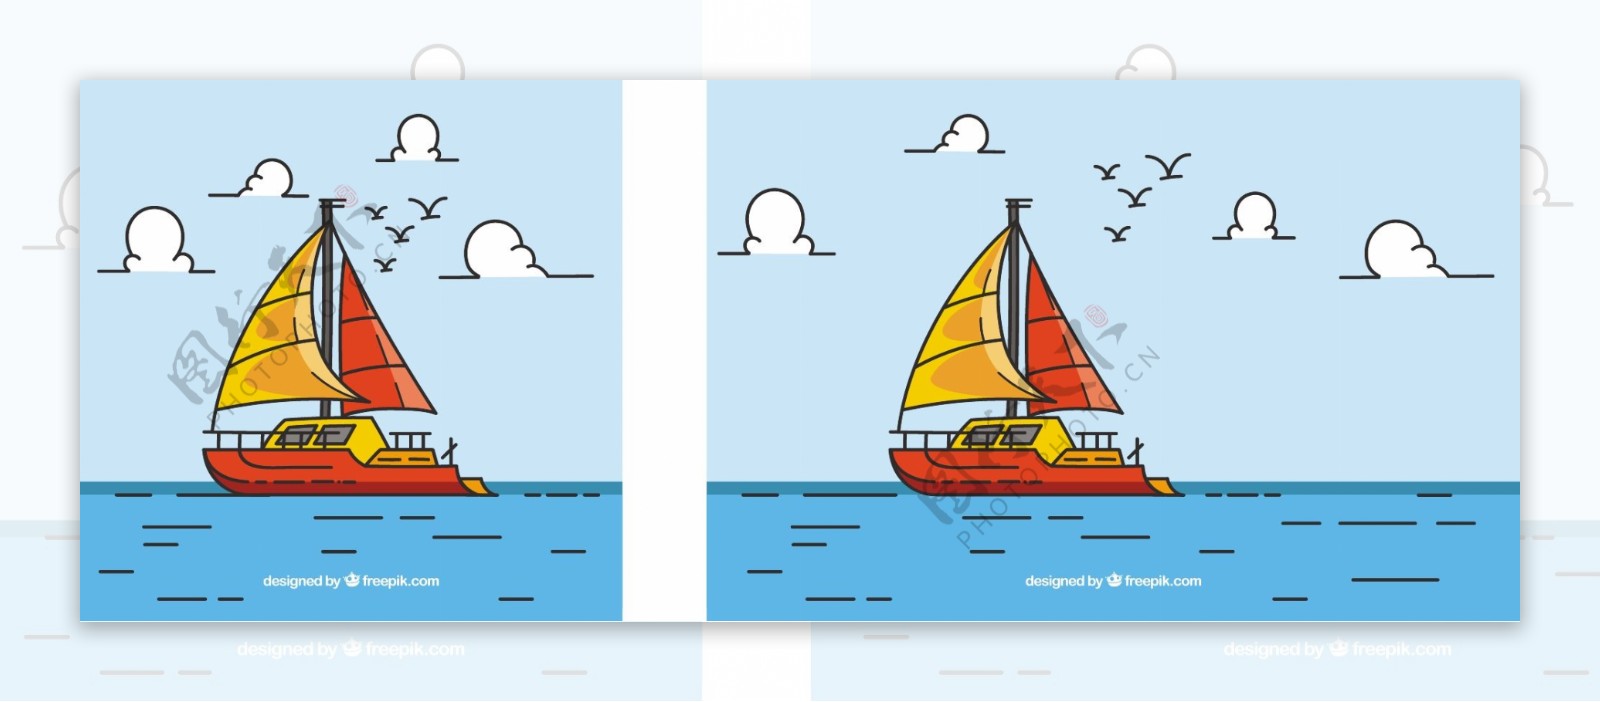 彩色背景船和鸟在平面设计